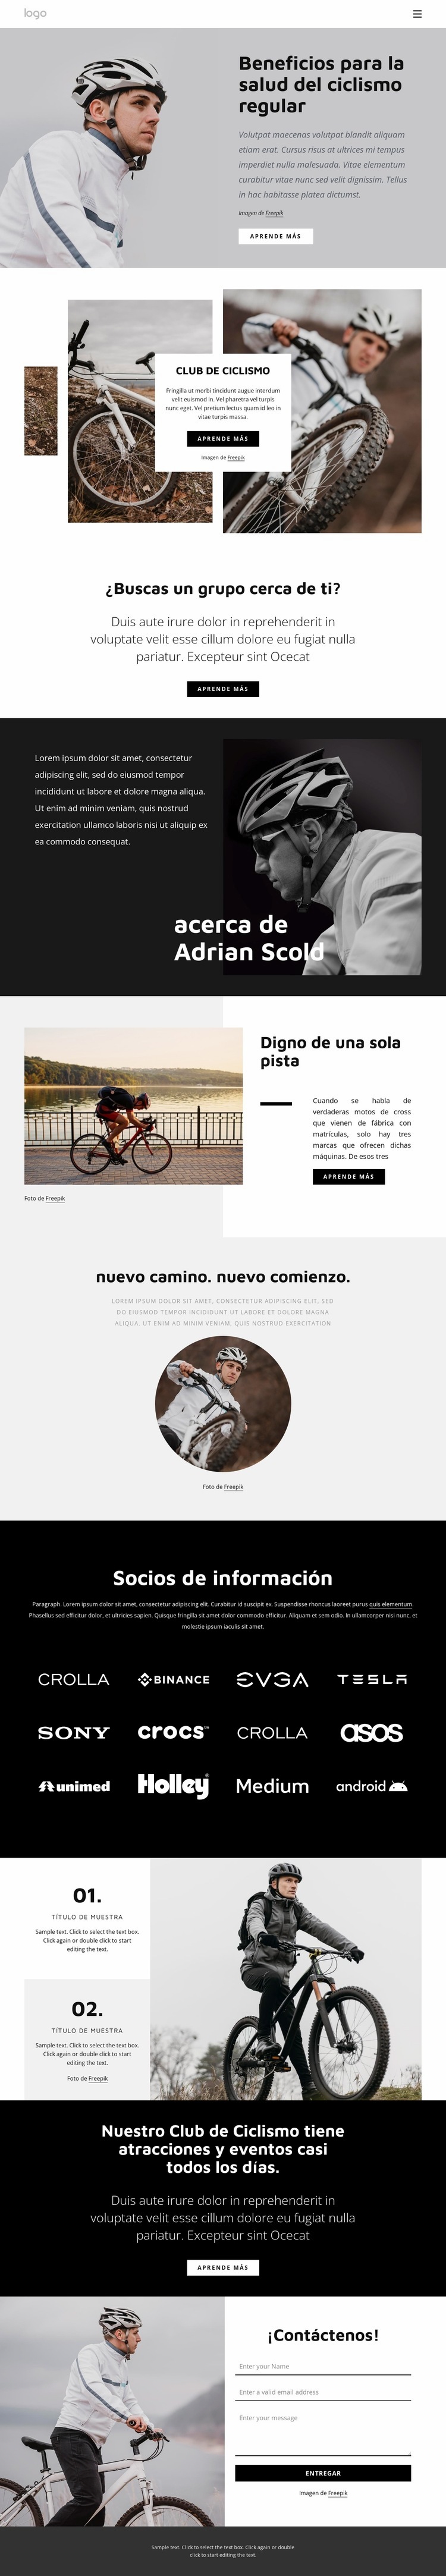 Beneficios del ciclismo regular Plantillas de creación de sitios web